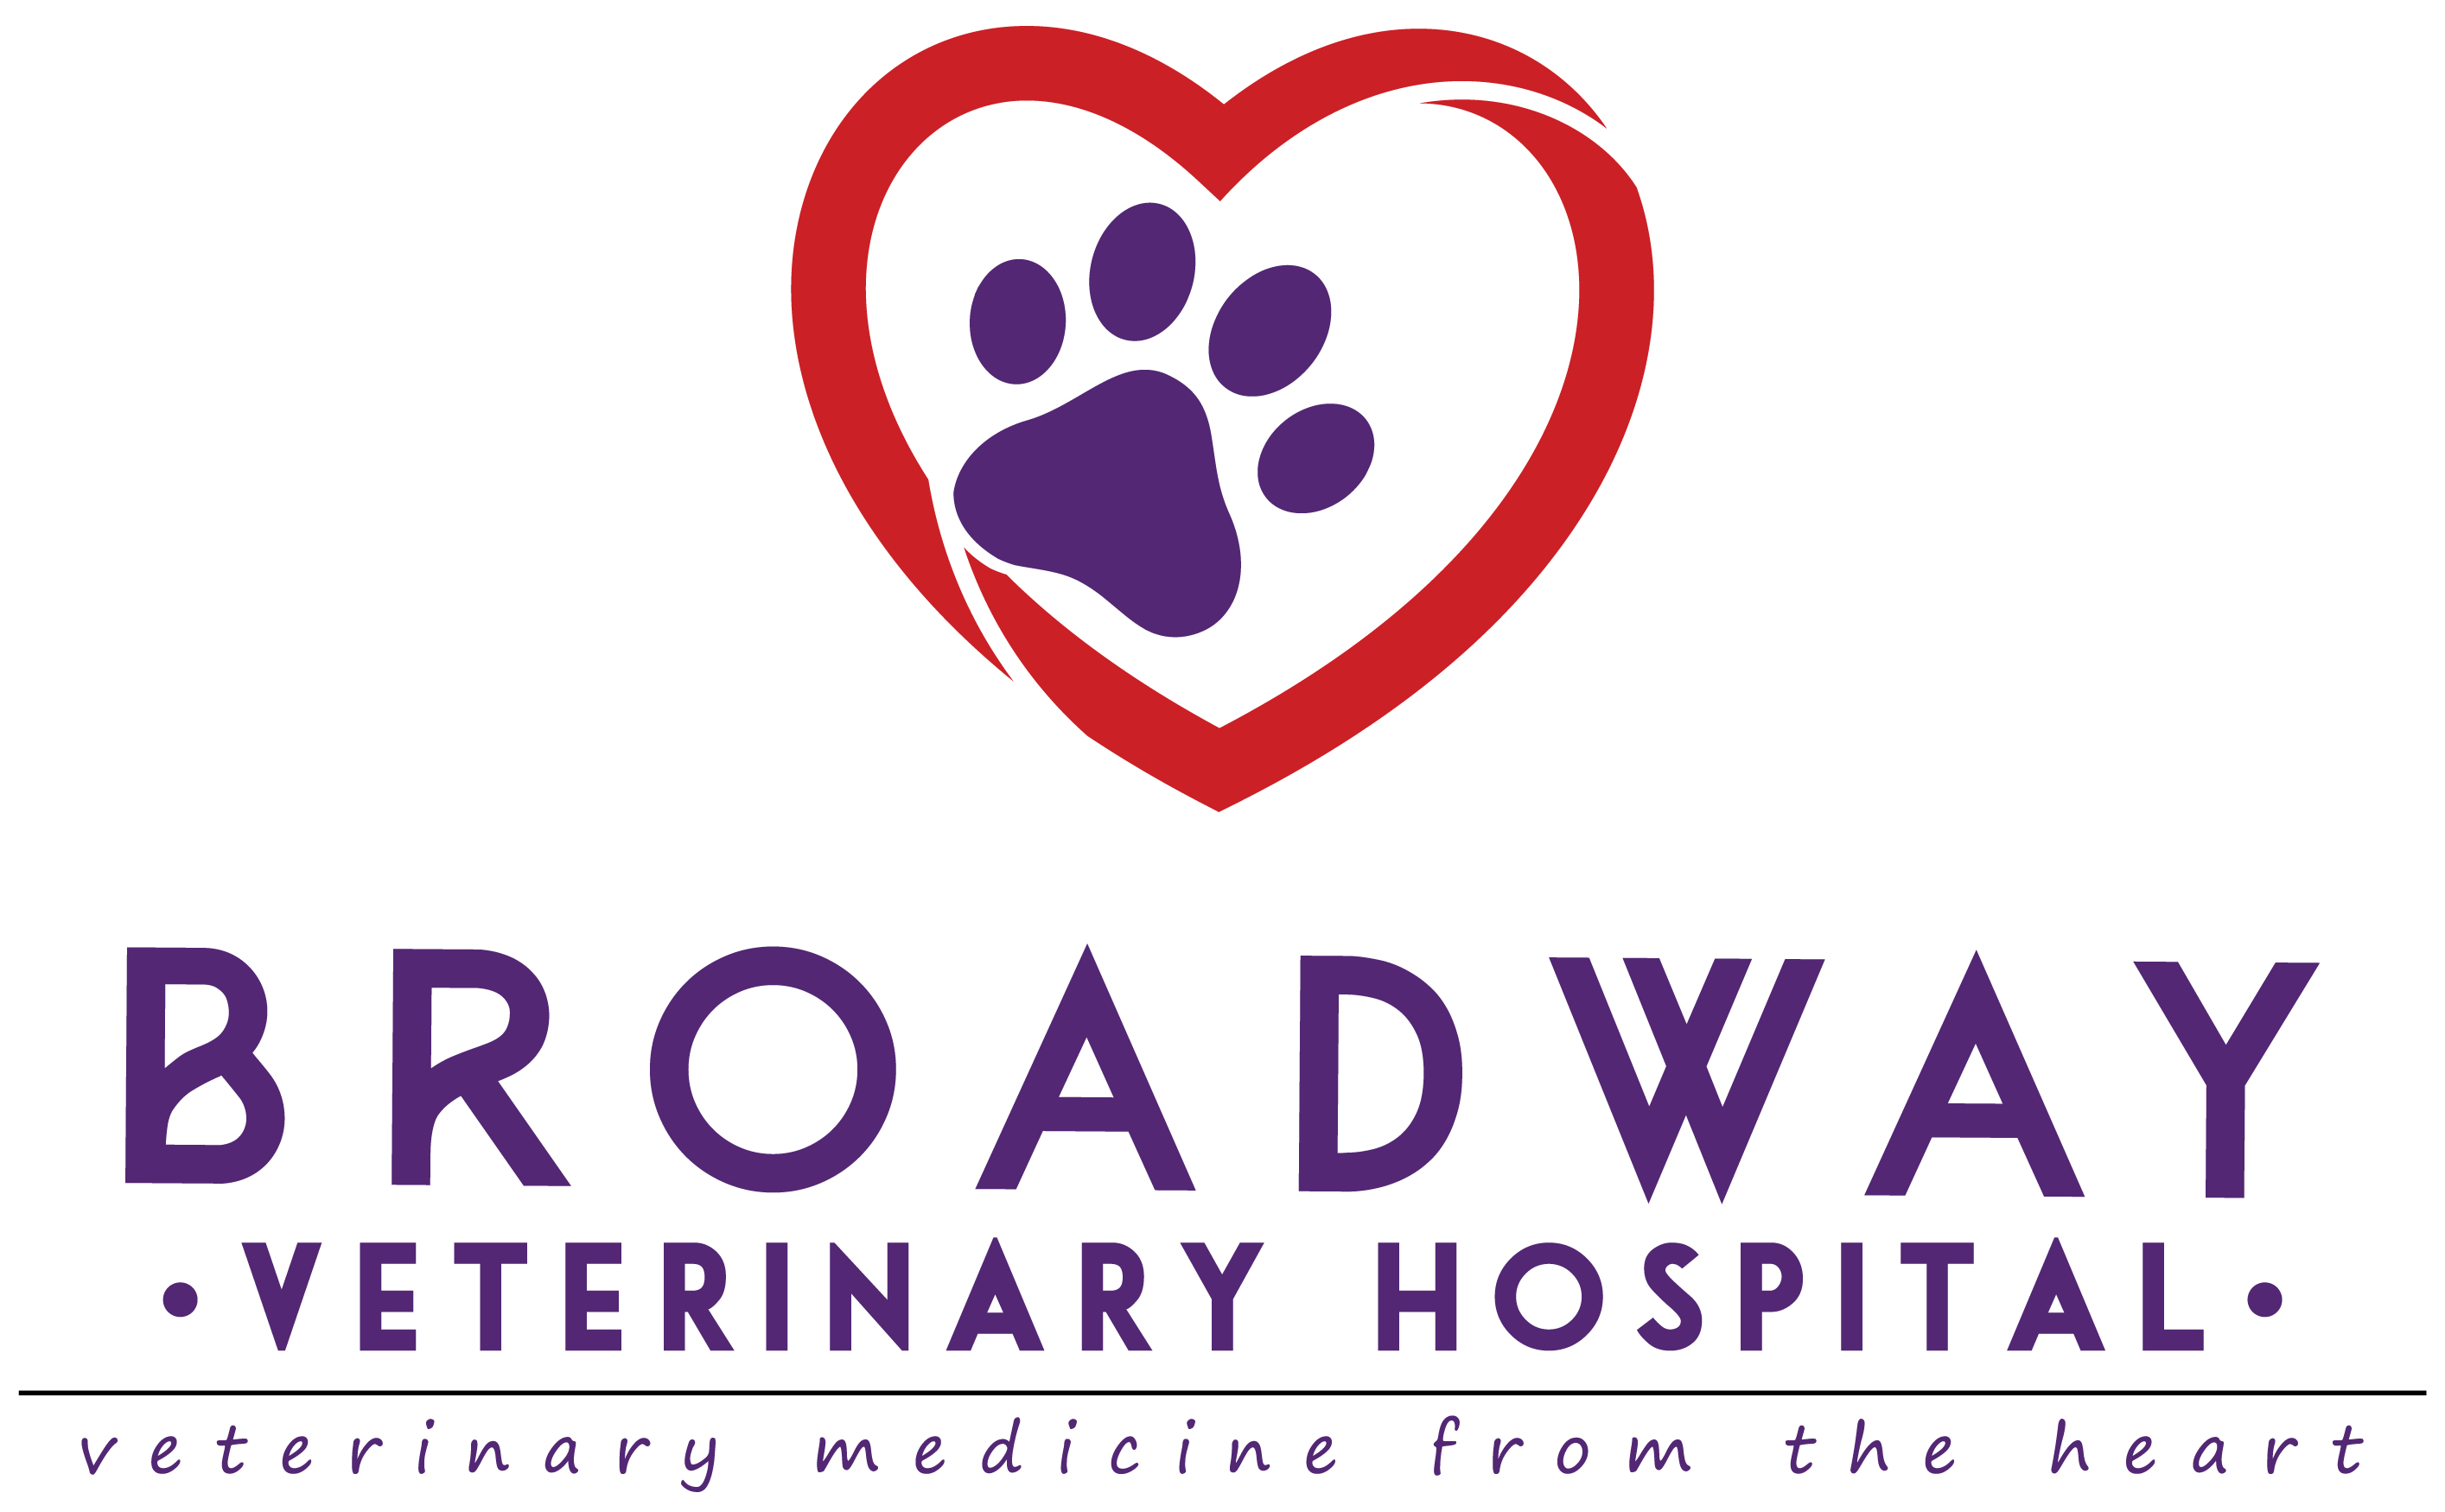 Broadway Veterinary Hospital Logo, Text: Veterinary Medicine from the heart.